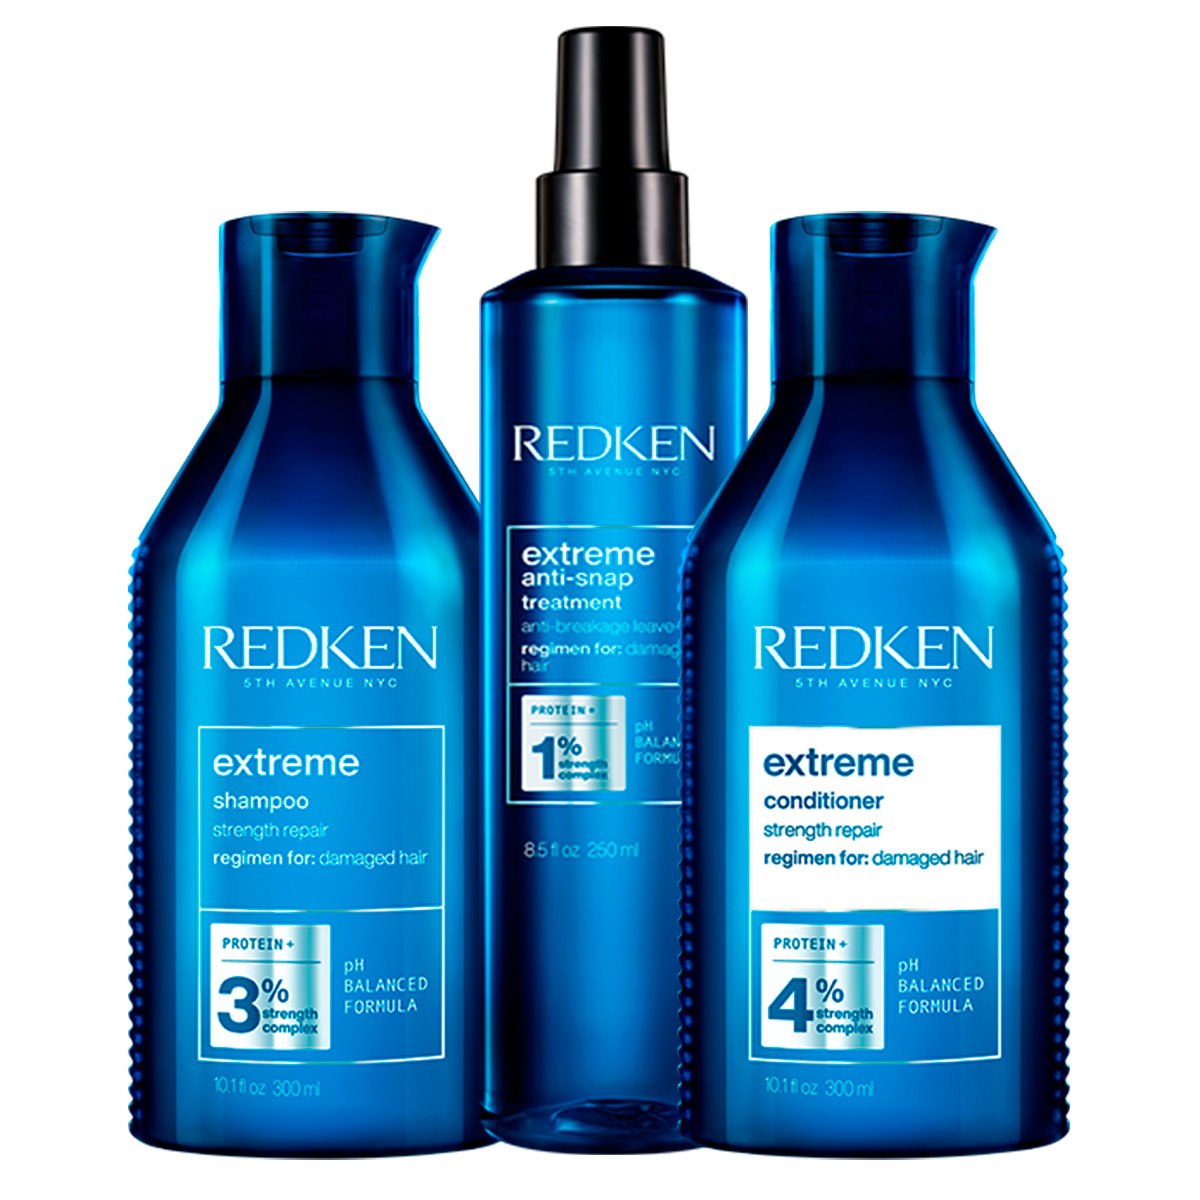 Redken Набор: Восстанавливающий шампунь для ослабленных и поврежденных волос, 300 мл + Восстанавливающий кондиционер для ослабленных и поврежденных волос, 300 мл + Несмываемый уход Anti-snap, 250 мл (Redken, Уход за волосами) hair company шампунь уход keratin care shampoo с кератином 250 мл